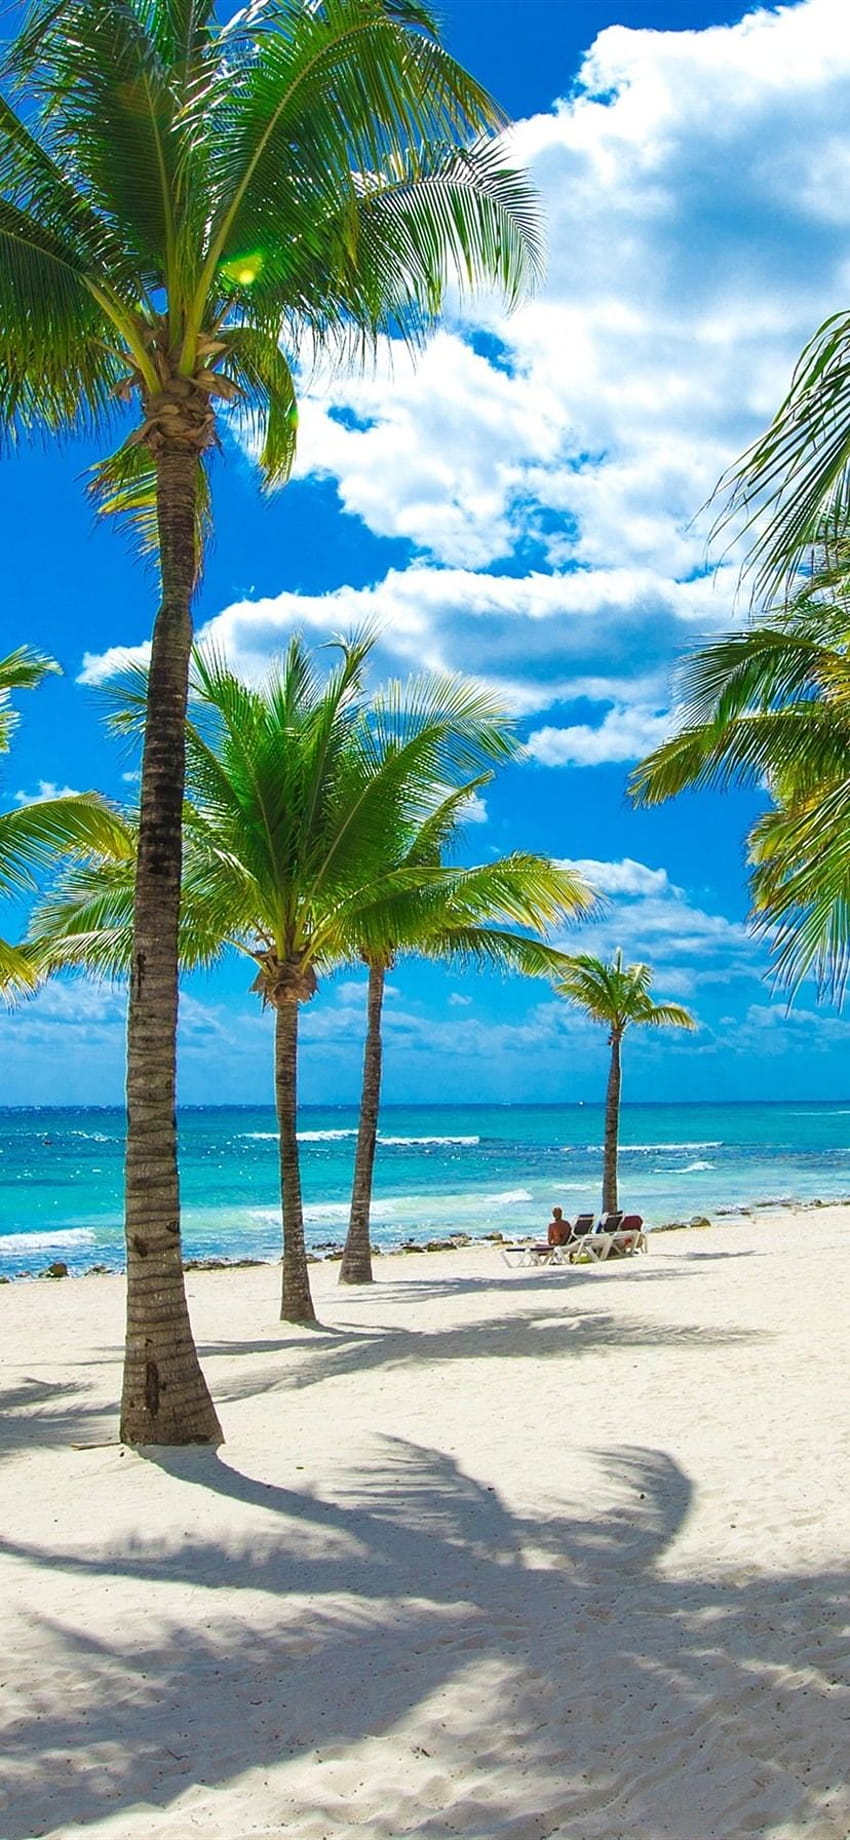 Beach, sea, palm trees, tropical, clouds, sunshine 1080x1920, phone palm beach HD phone wallpaper